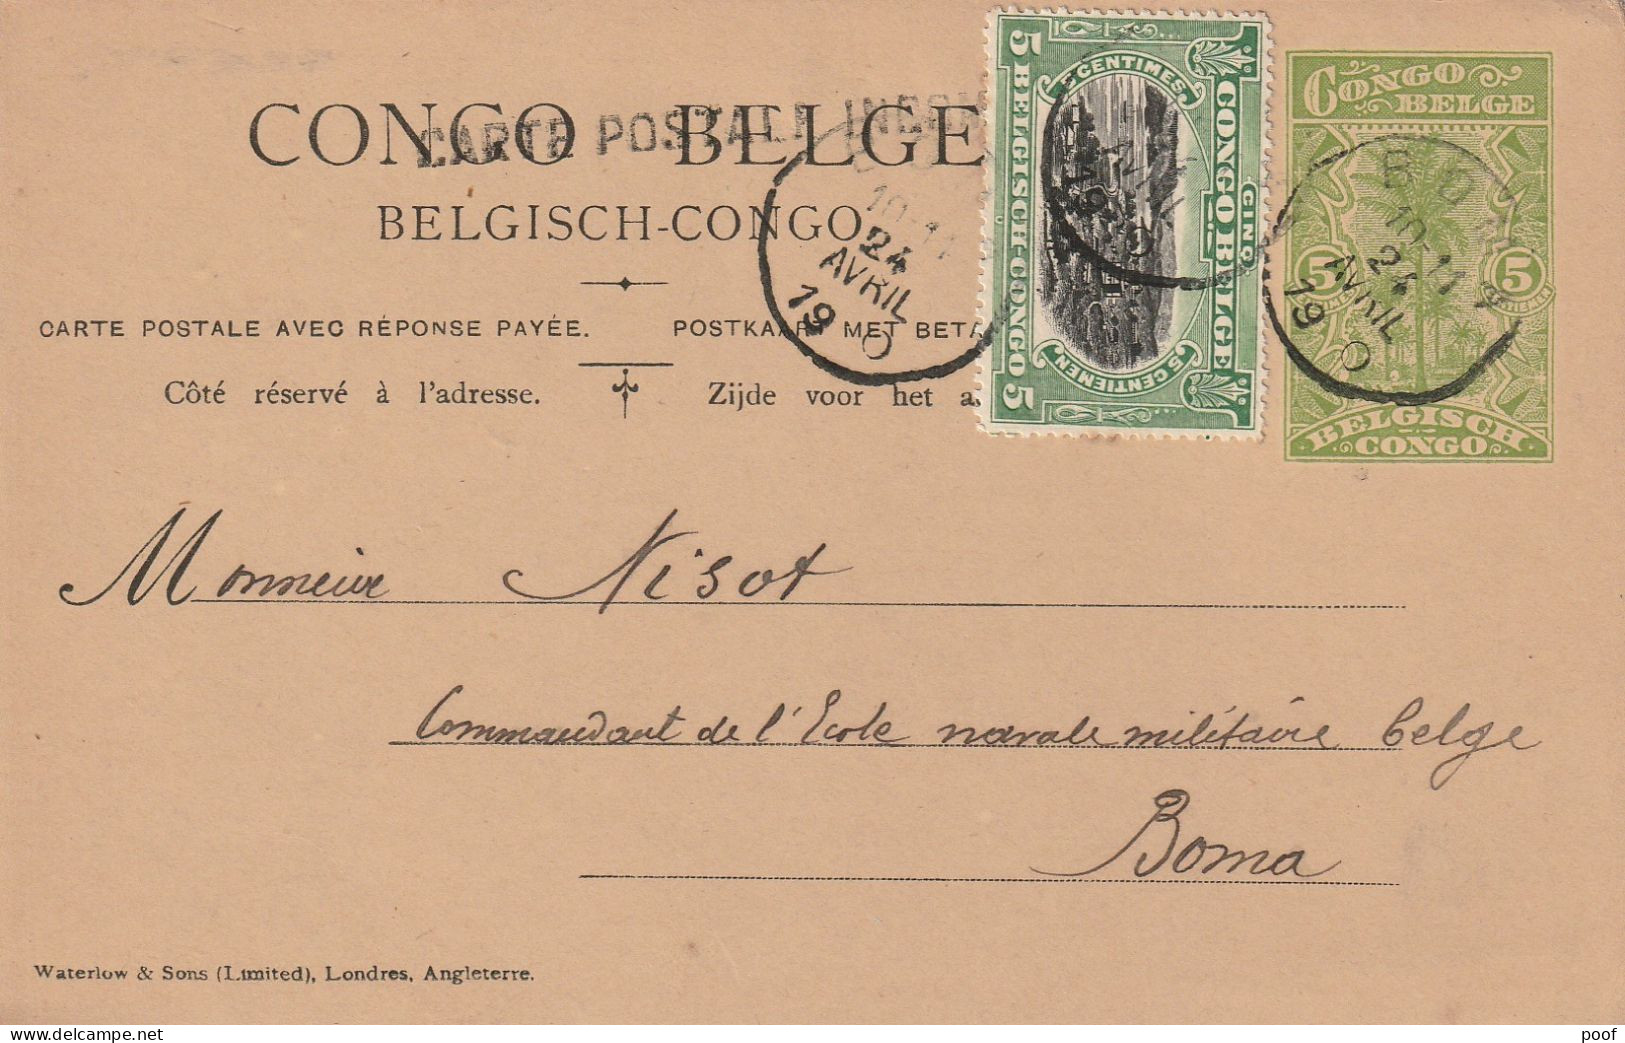 Congo-Belge : Carte Postale Avec Réponse Payée ---- 1920 - Briefe U. Dokumente